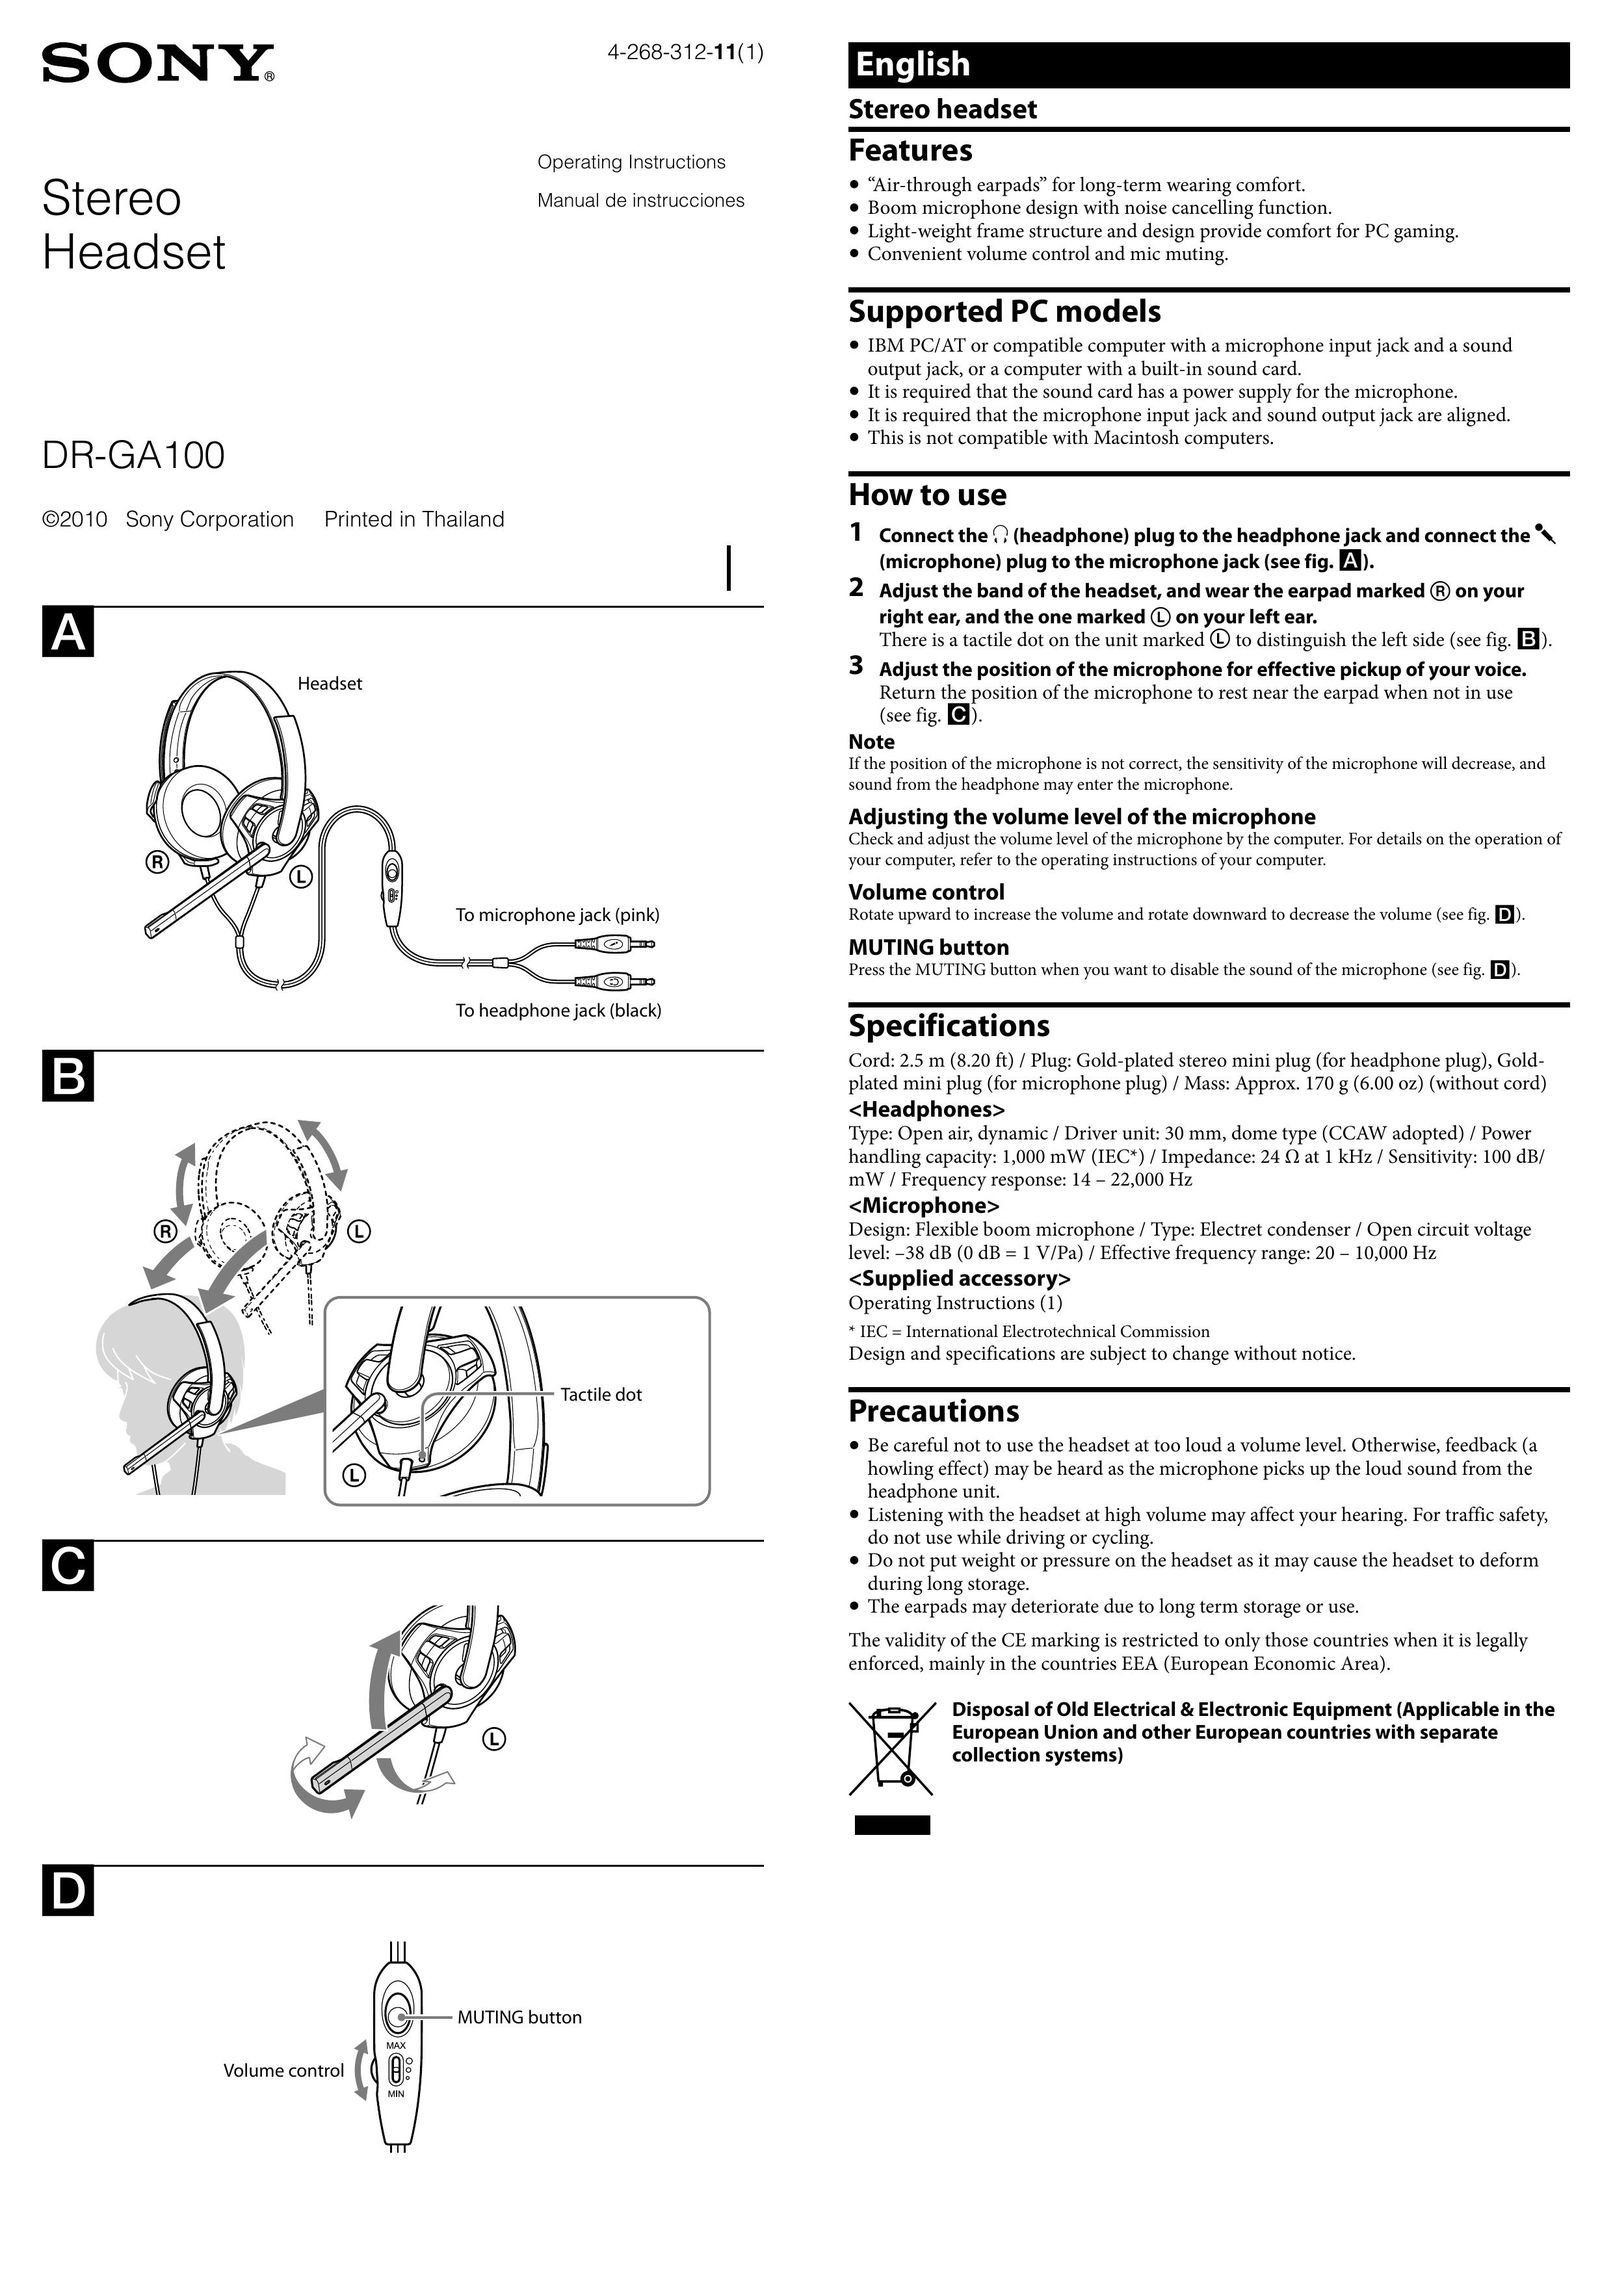 Sony DRGA100/VLT Corded Headset User Manual